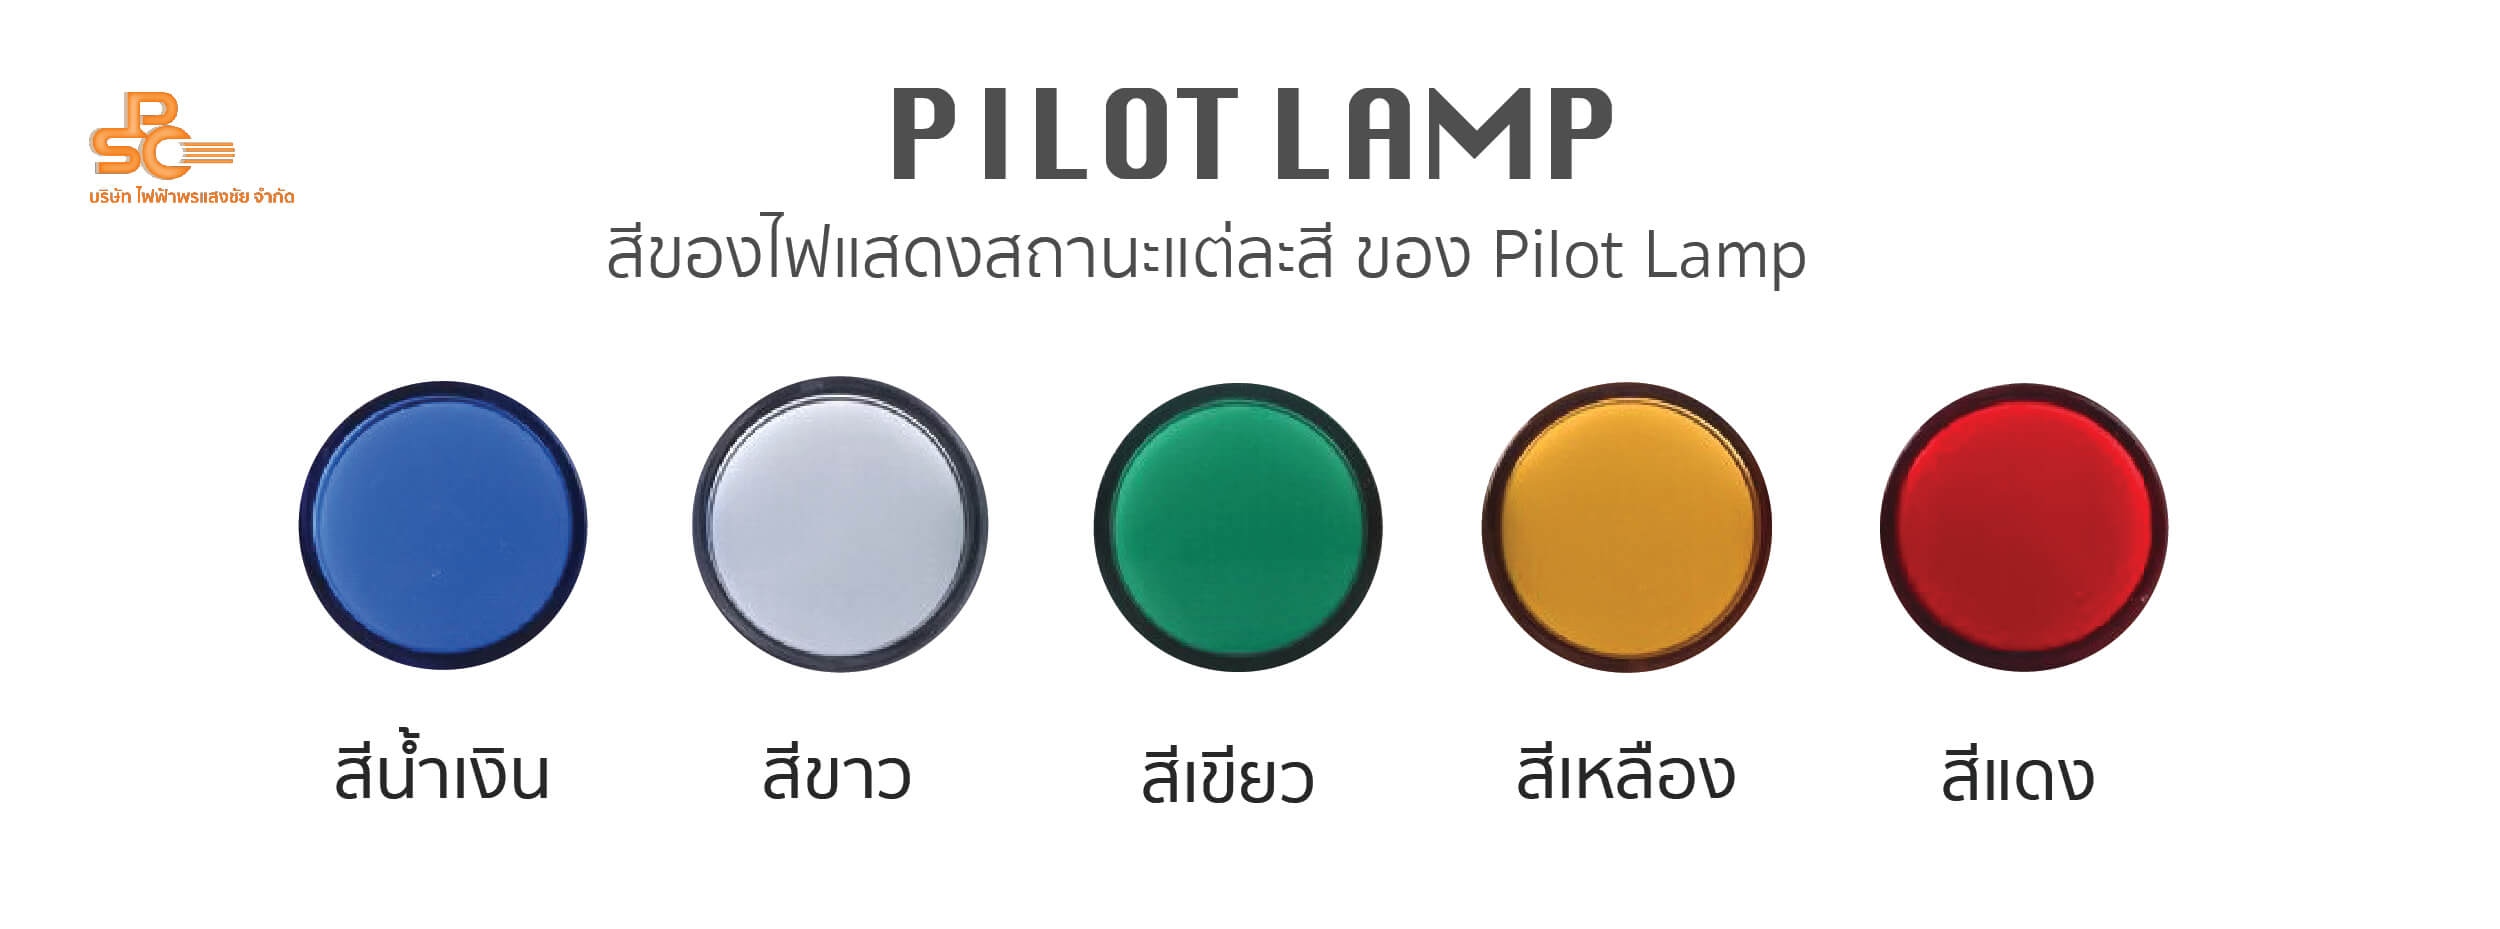 PSC - Pilot Lamp Colour